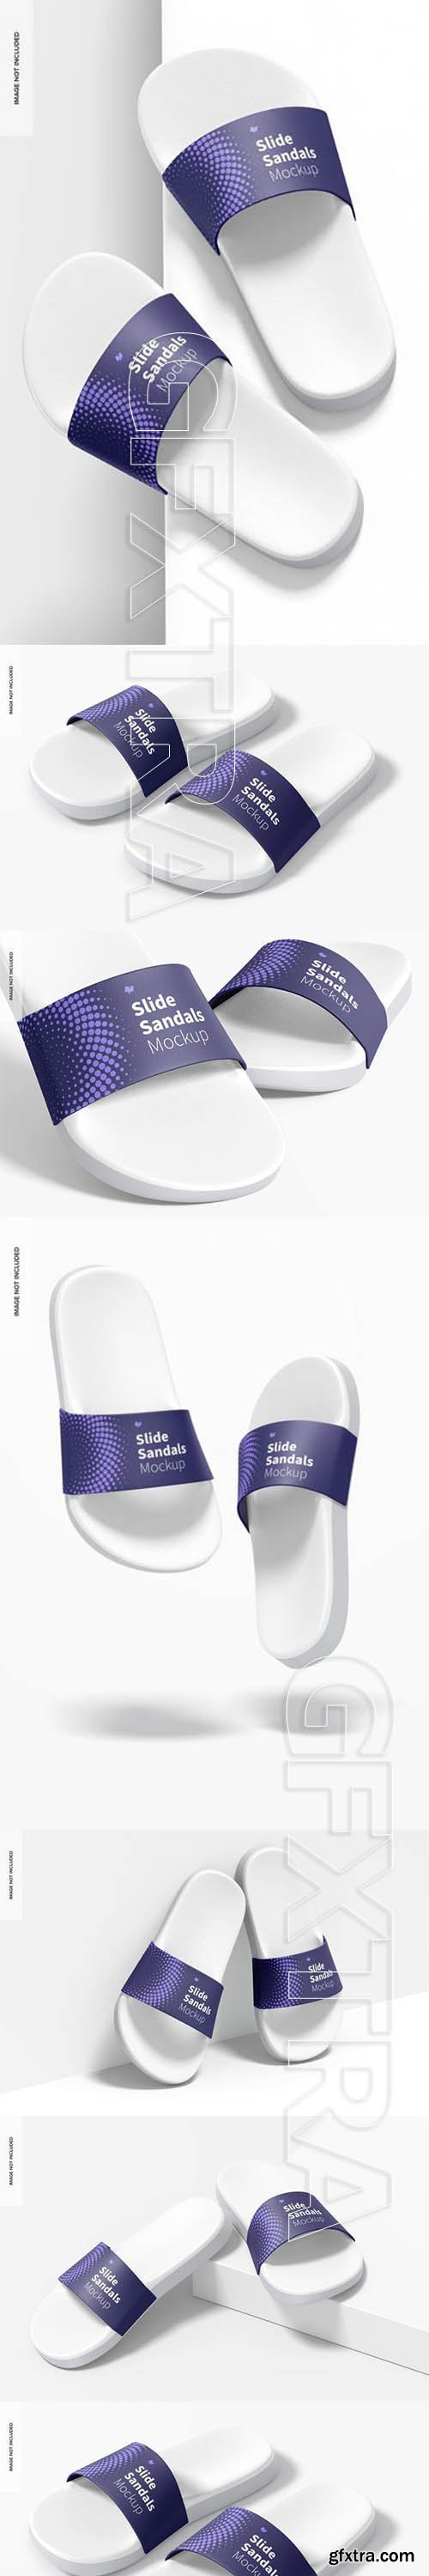 Slide sandals mockup